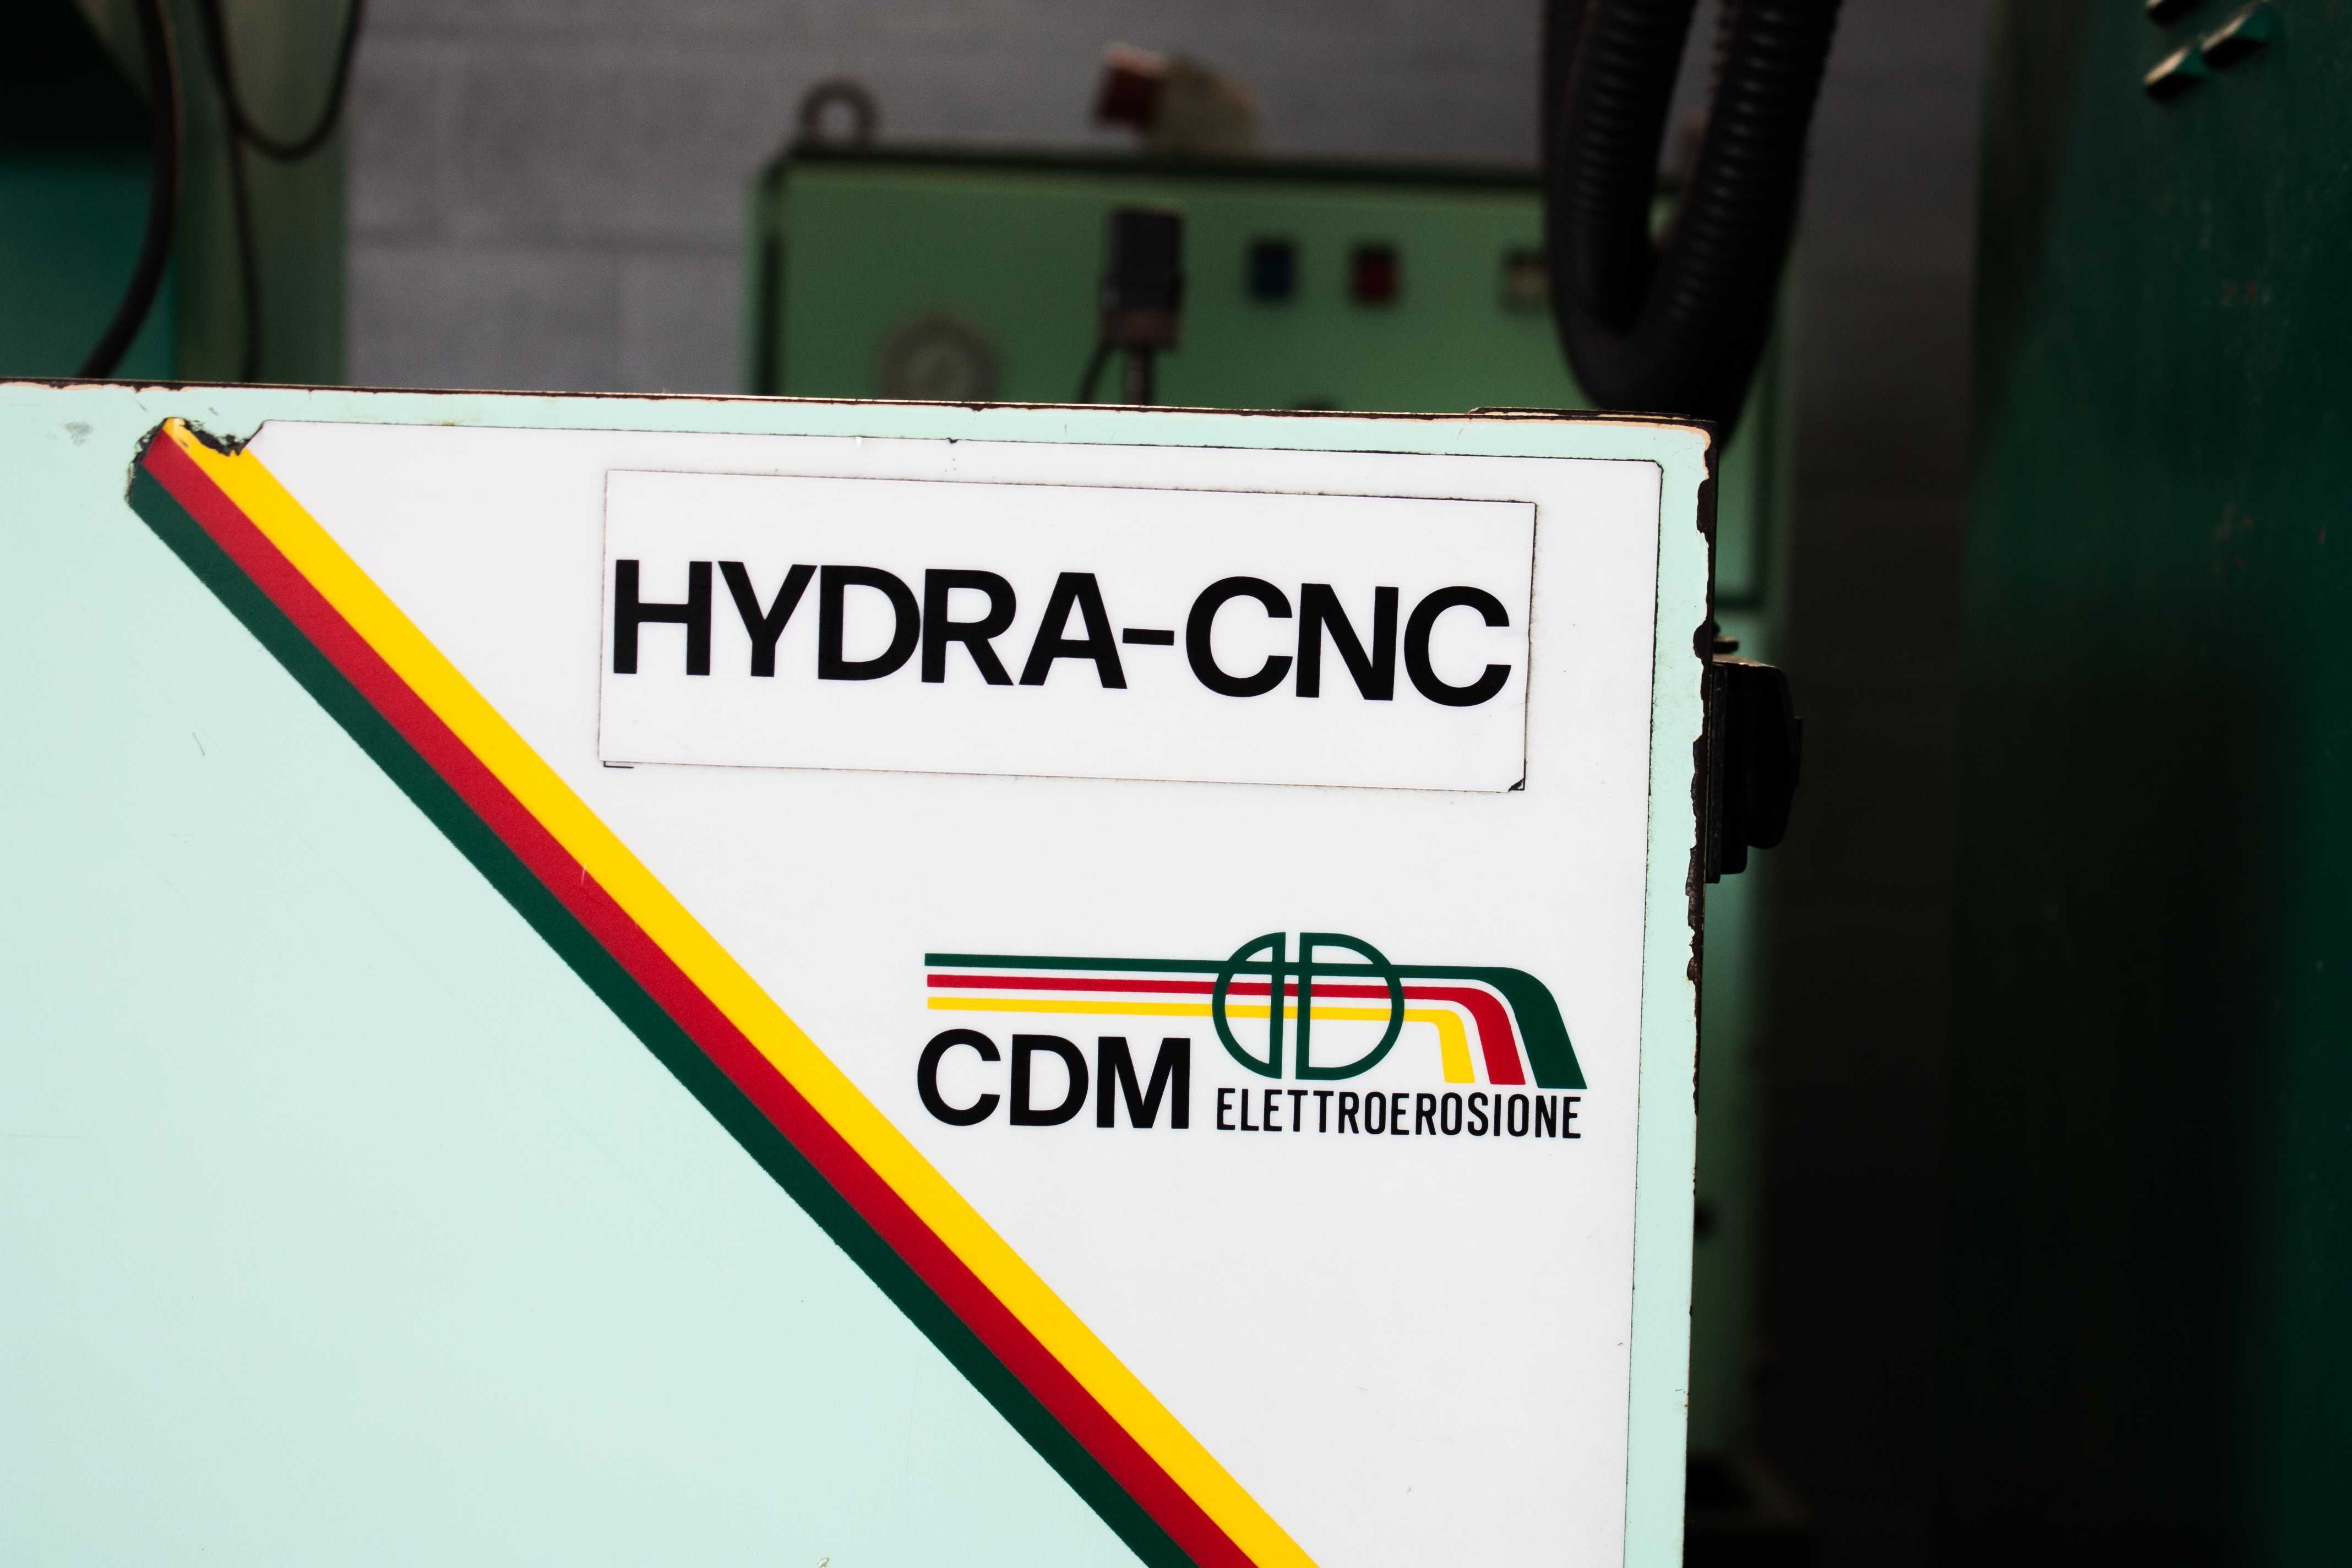 Erosão CDM Hydra CNC (usada) - Preço: Sob Consulta